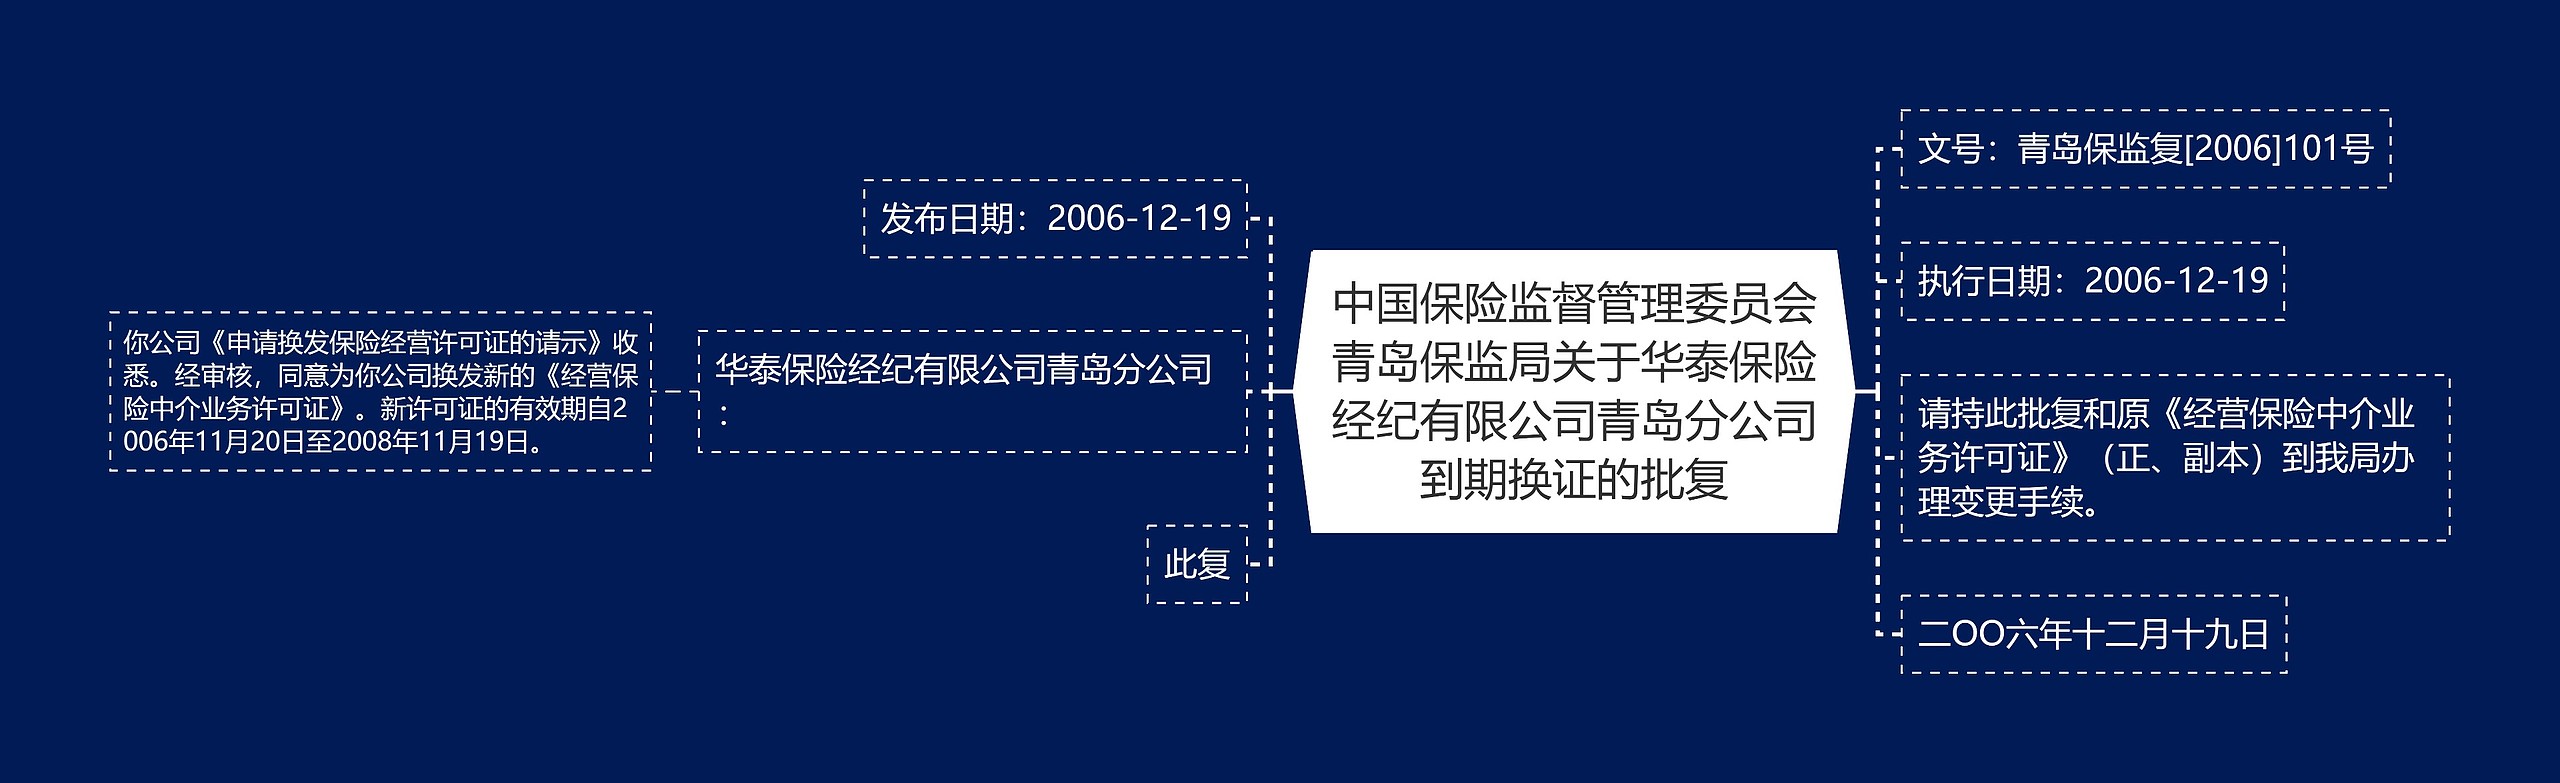 中国保险监督管理委员会青岛保监局关于华泰保险经纪有限公司青岛分公司到期换证的批复思维导图